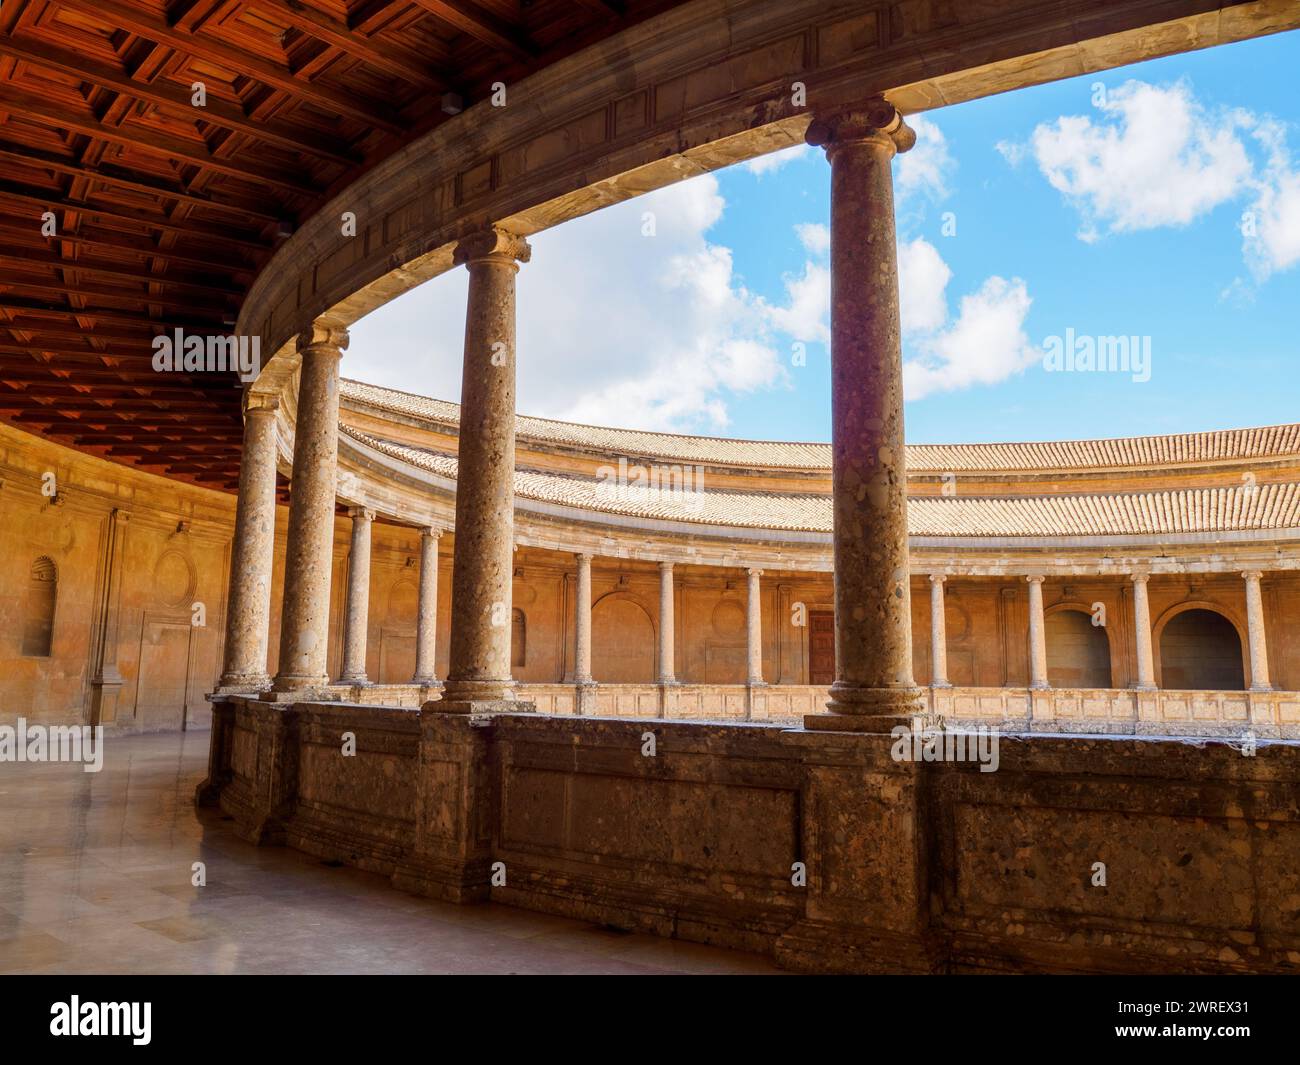 Collonata nel Palazzo di Carlo V - complesso dell'Alhambra - Granada, Spagna Foto Stock